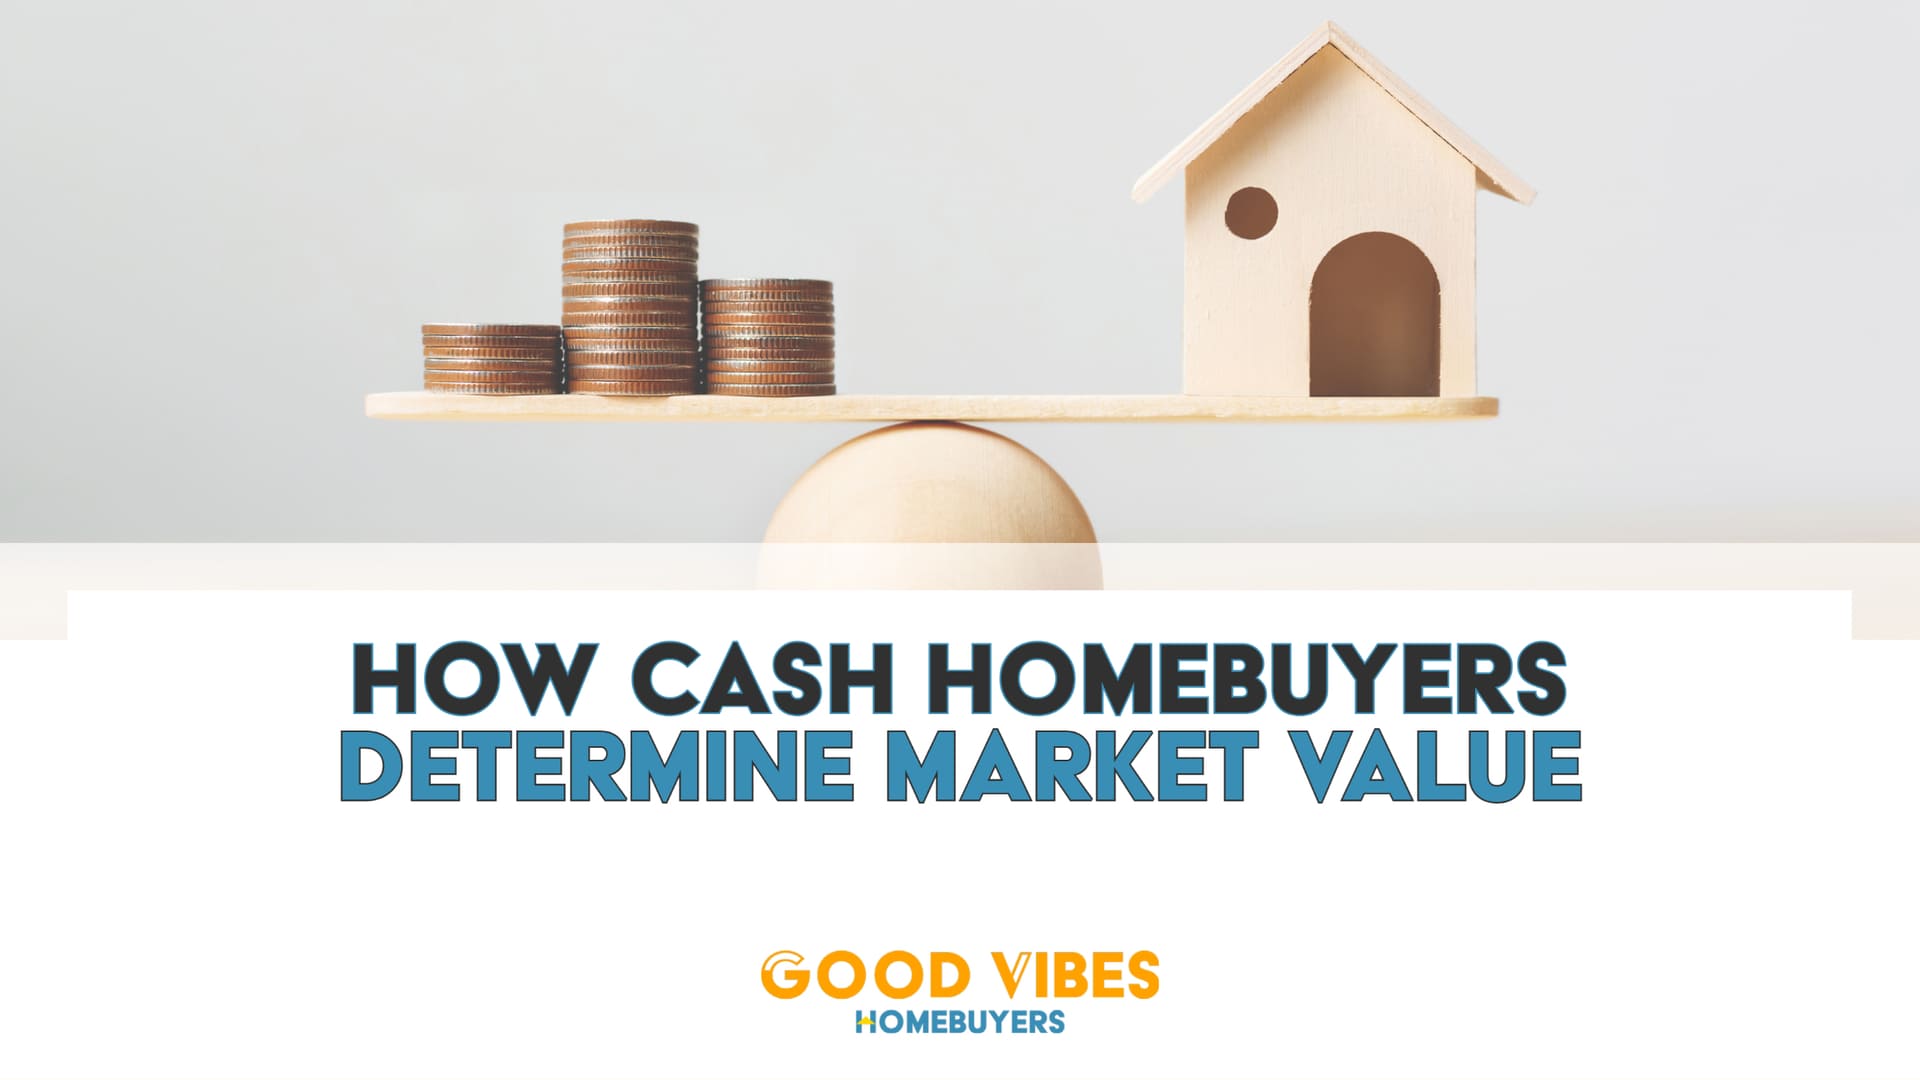 A home's cash value